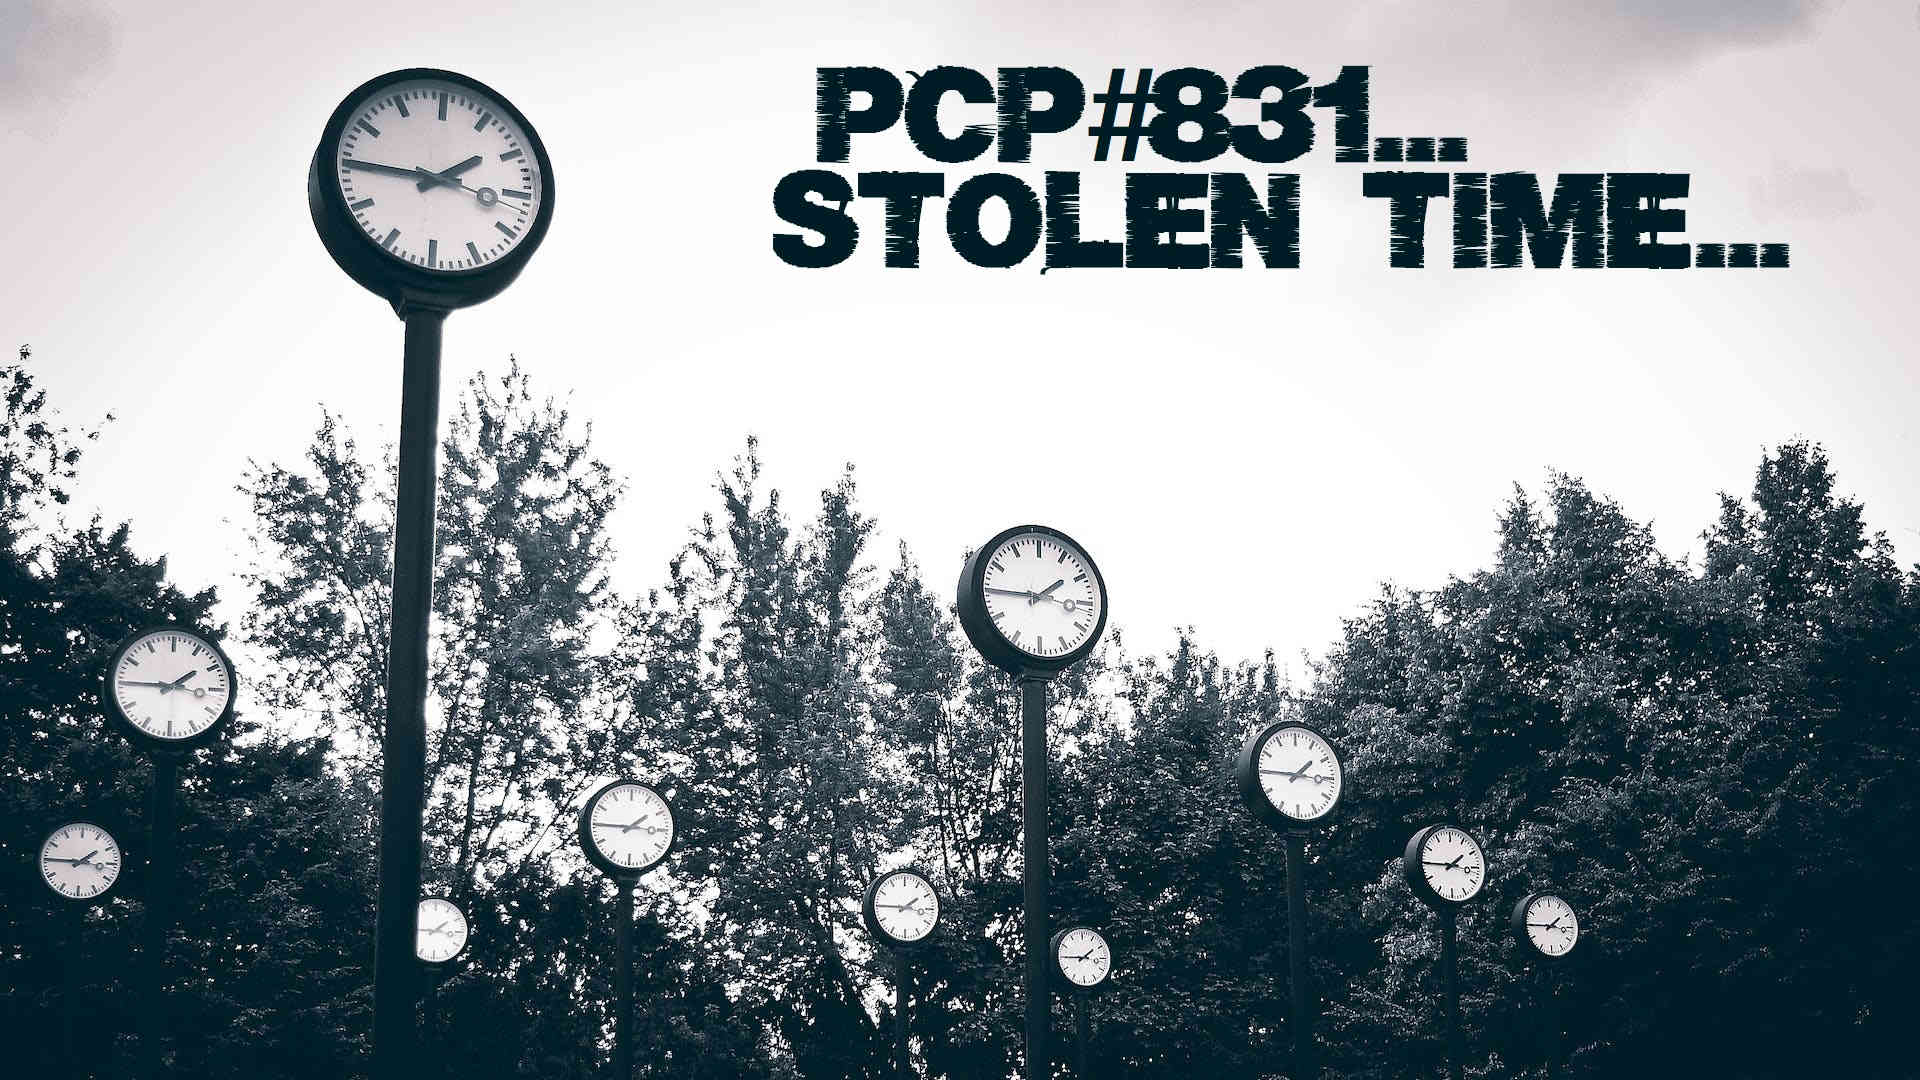 PCP#831... Stolen Time...